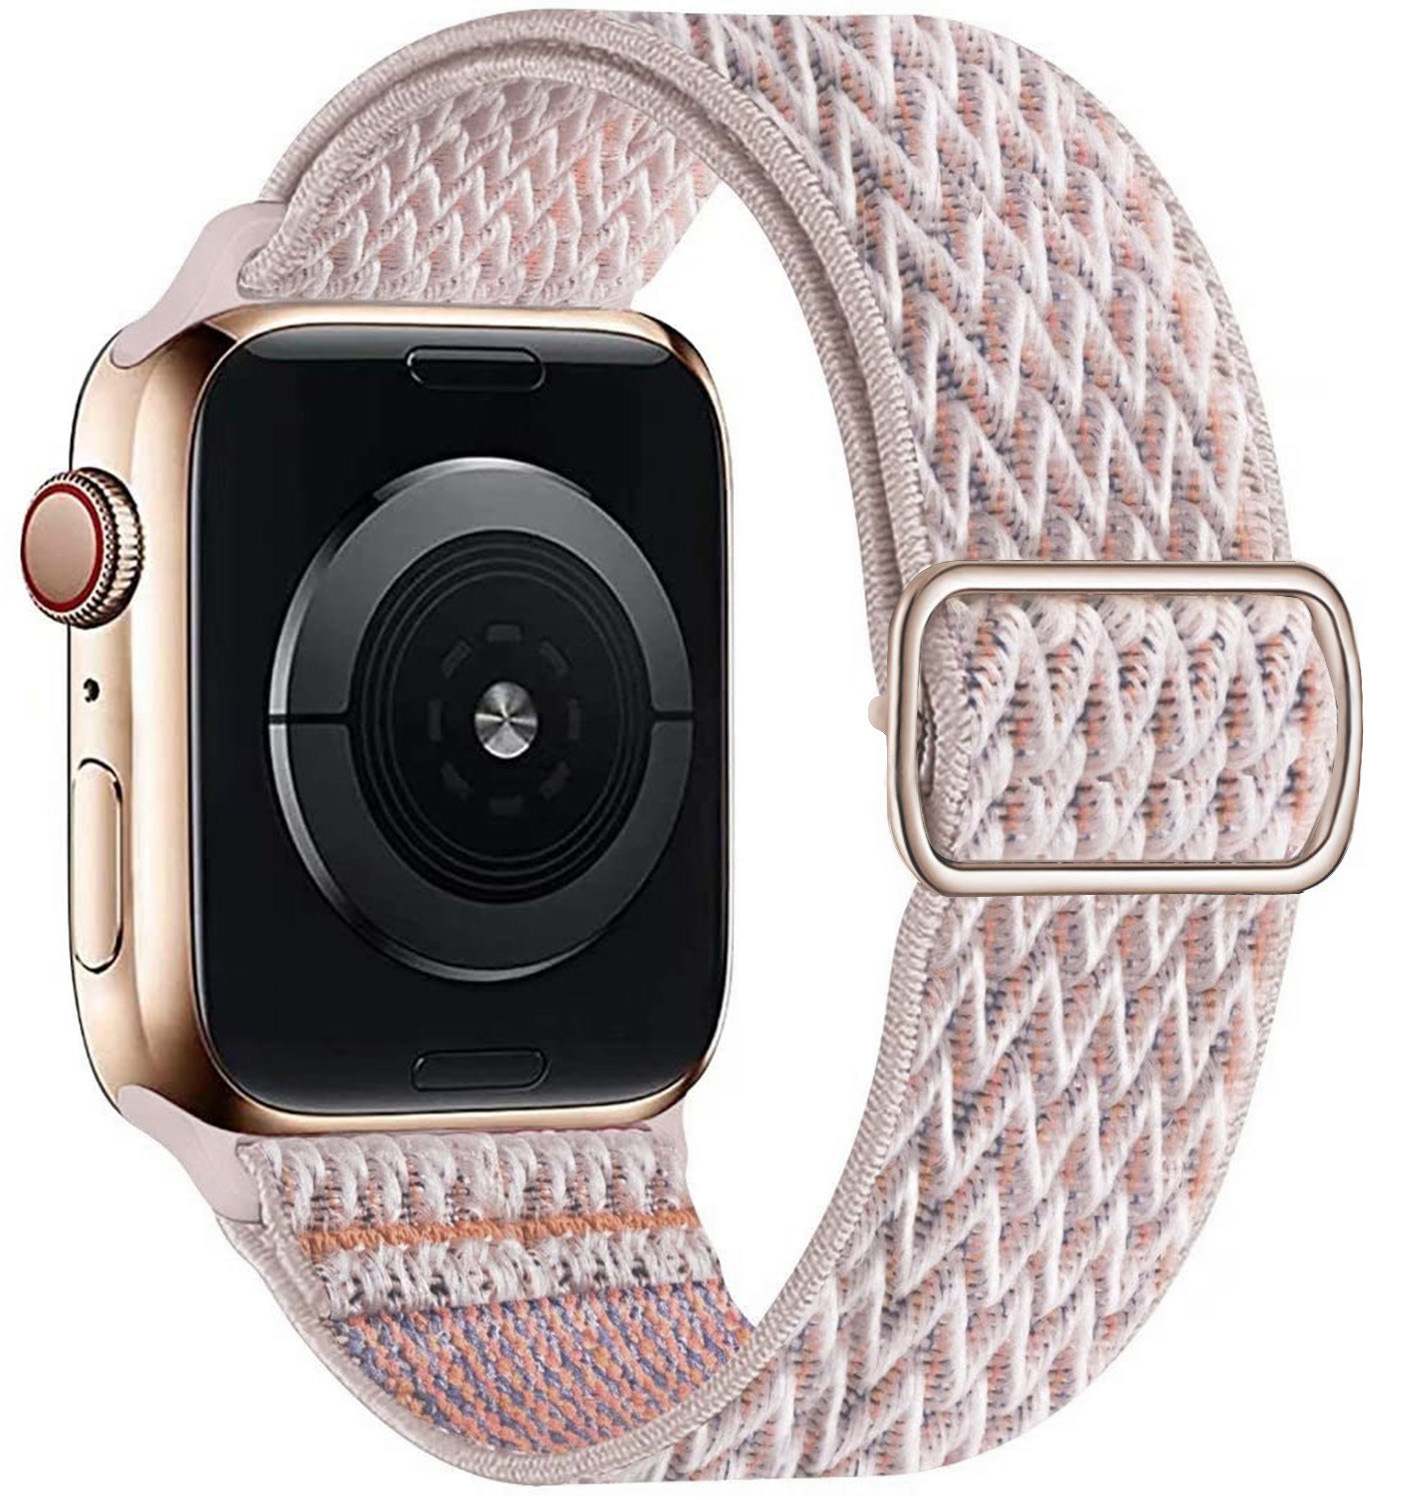 Correa solo de nailon para el Apple Watch en solitario - arena rosa